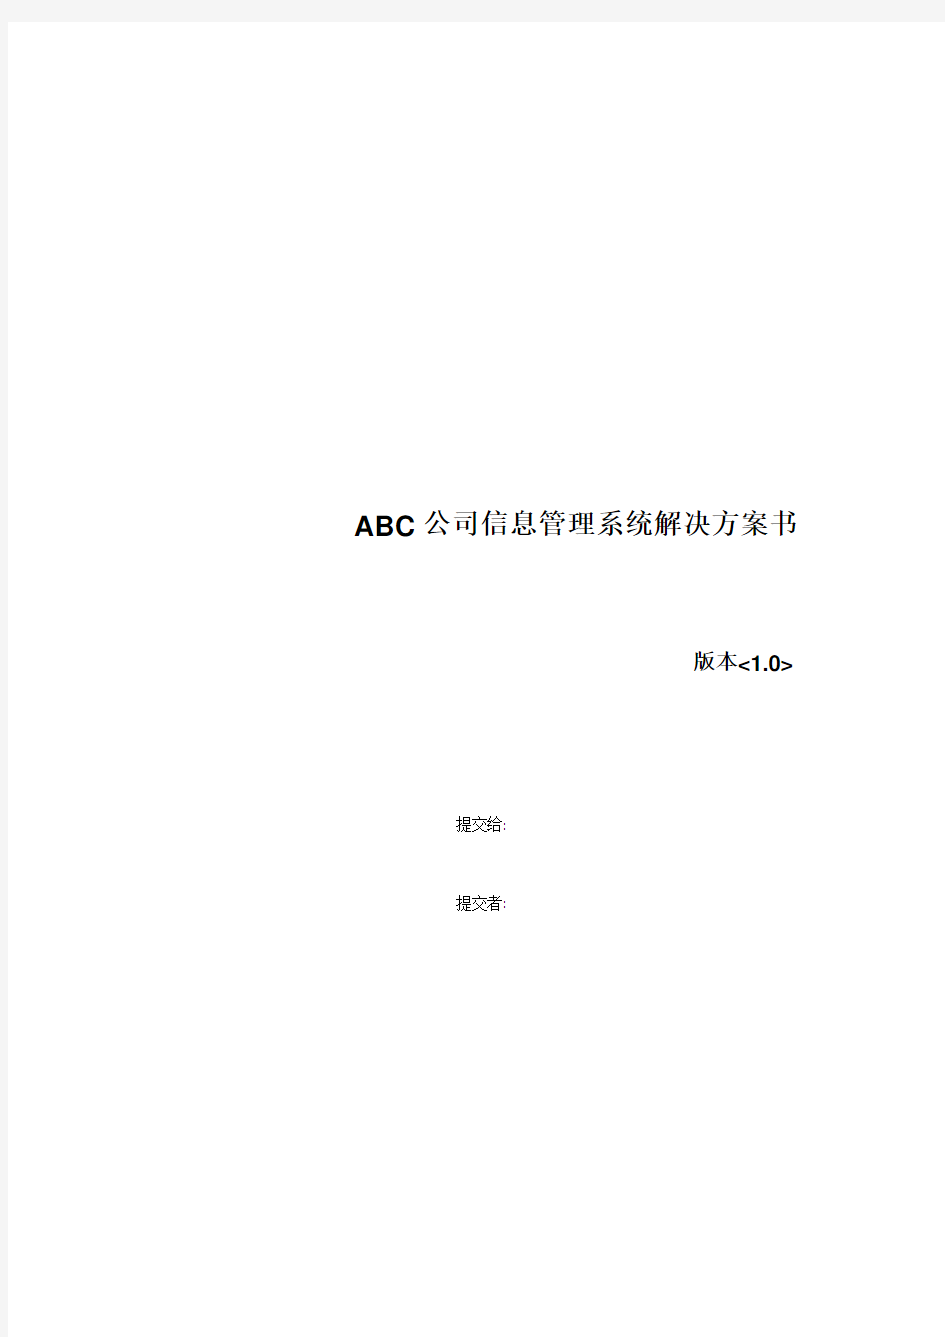 ABC公司信息管理系统解决方案